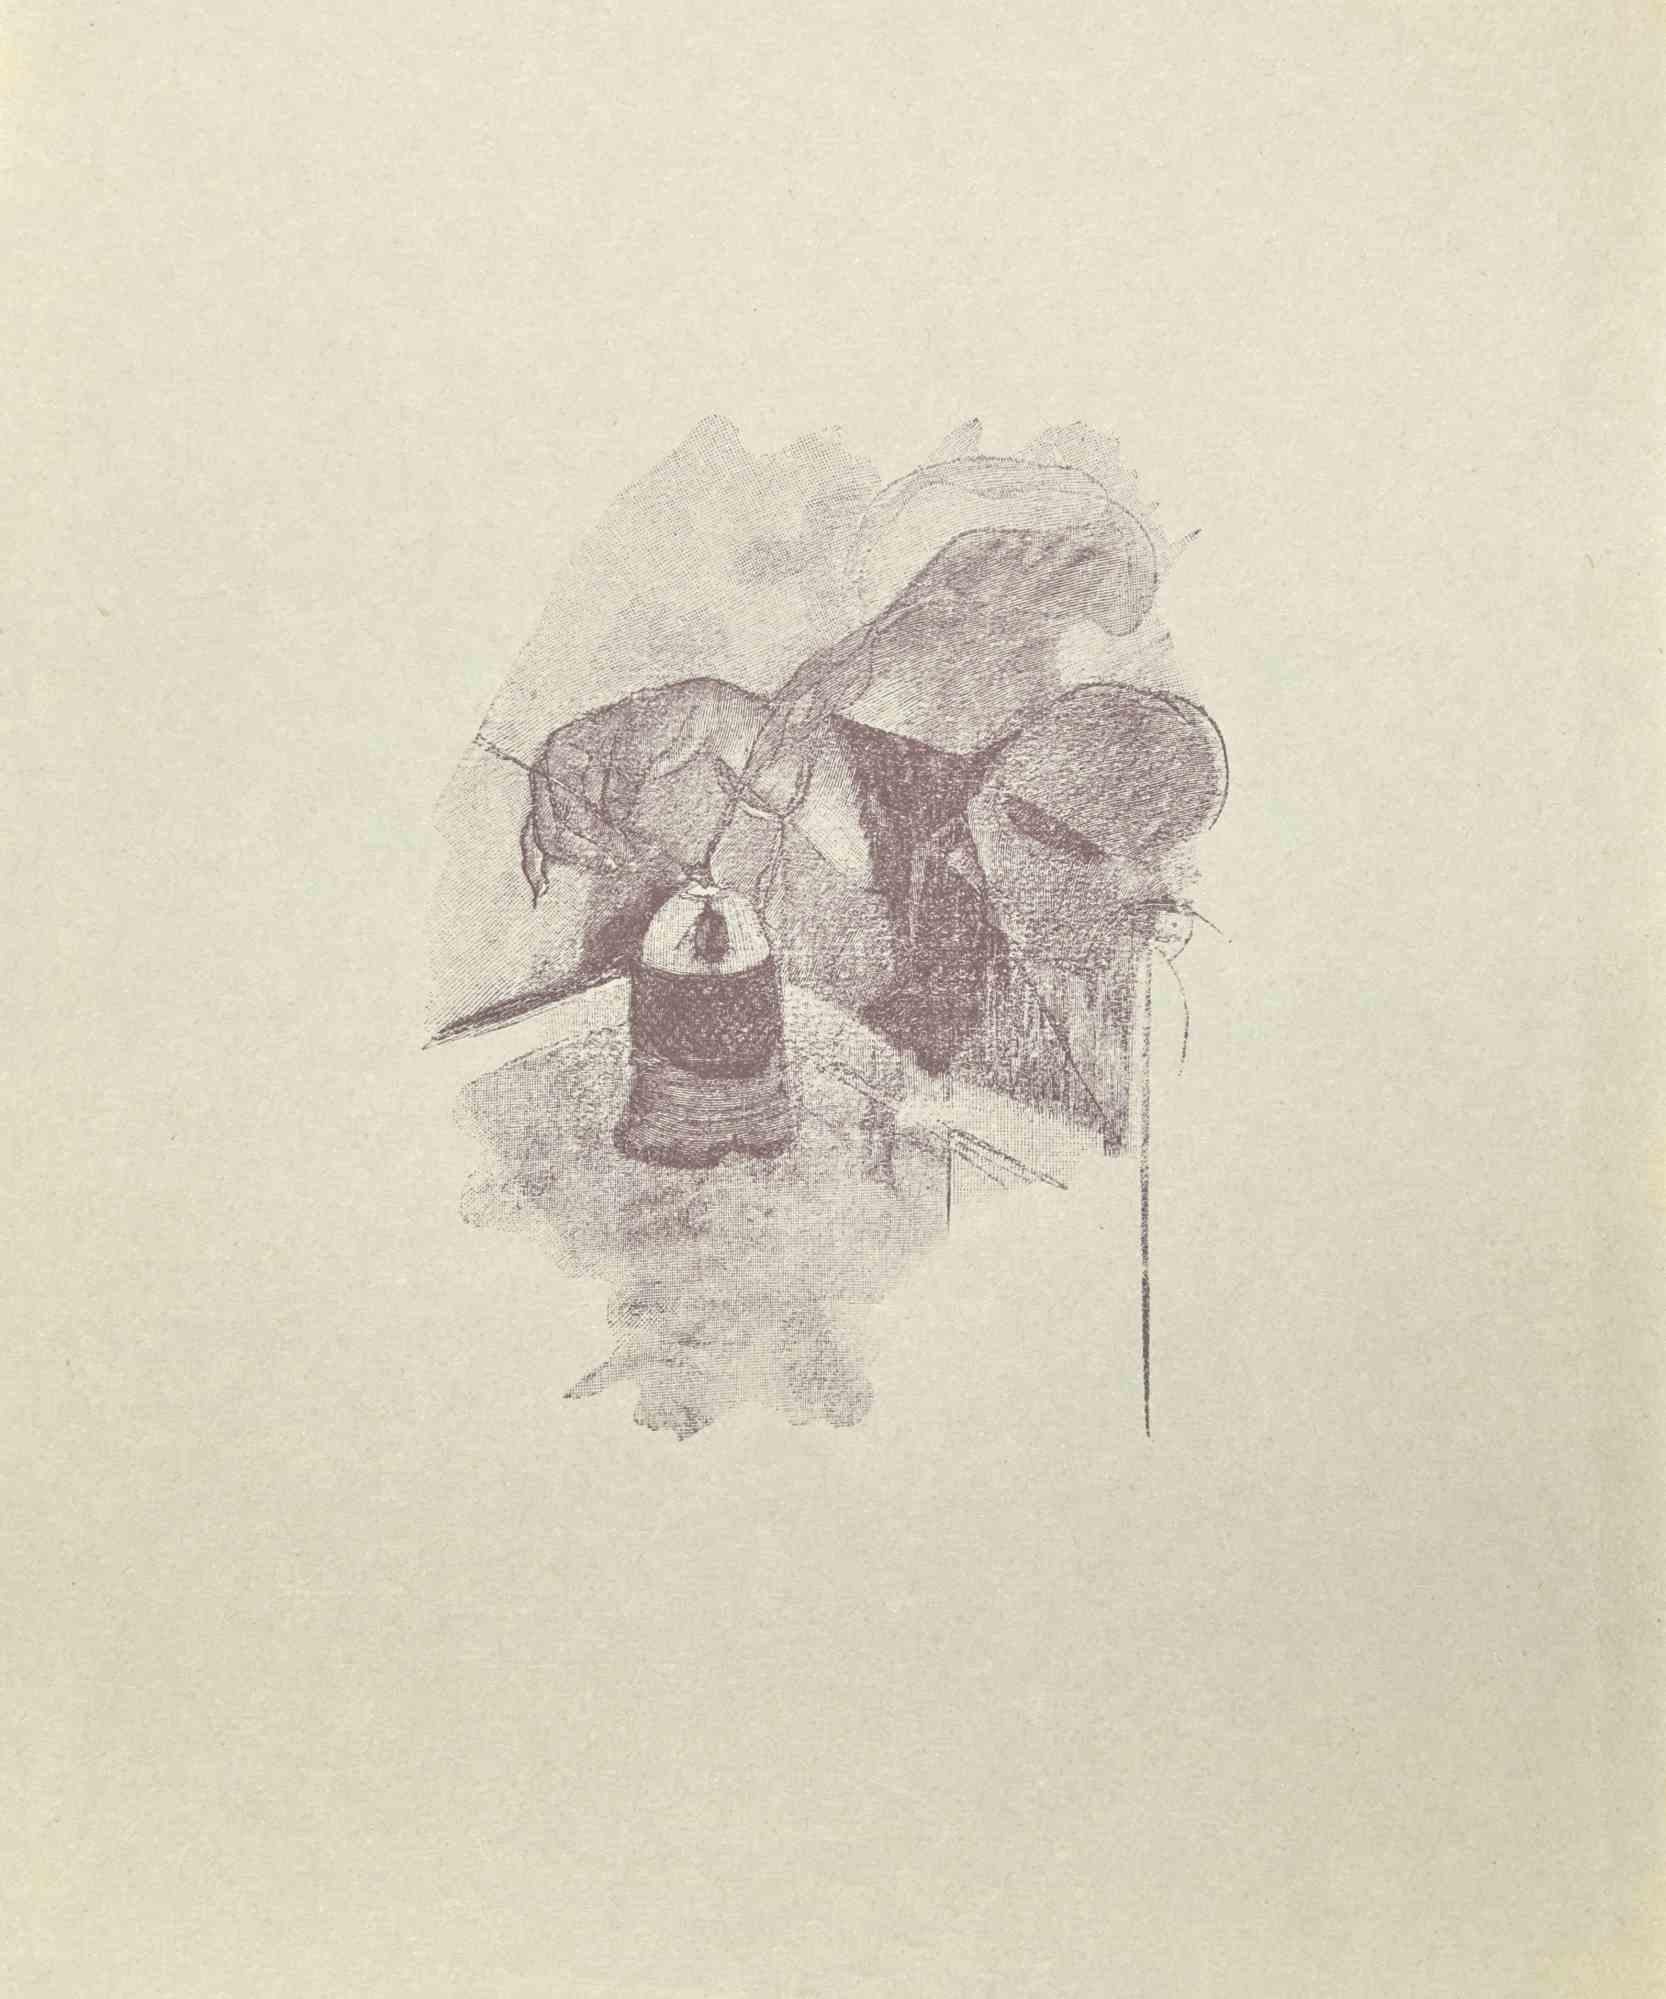 Lumière est une gravure sur bois imprimée sur papier, réalisée d'après Jean Paul Sauget pour Les Soirs d'Opium de Maurice Magre.

Publié en 1921.

Bonnes conditions.